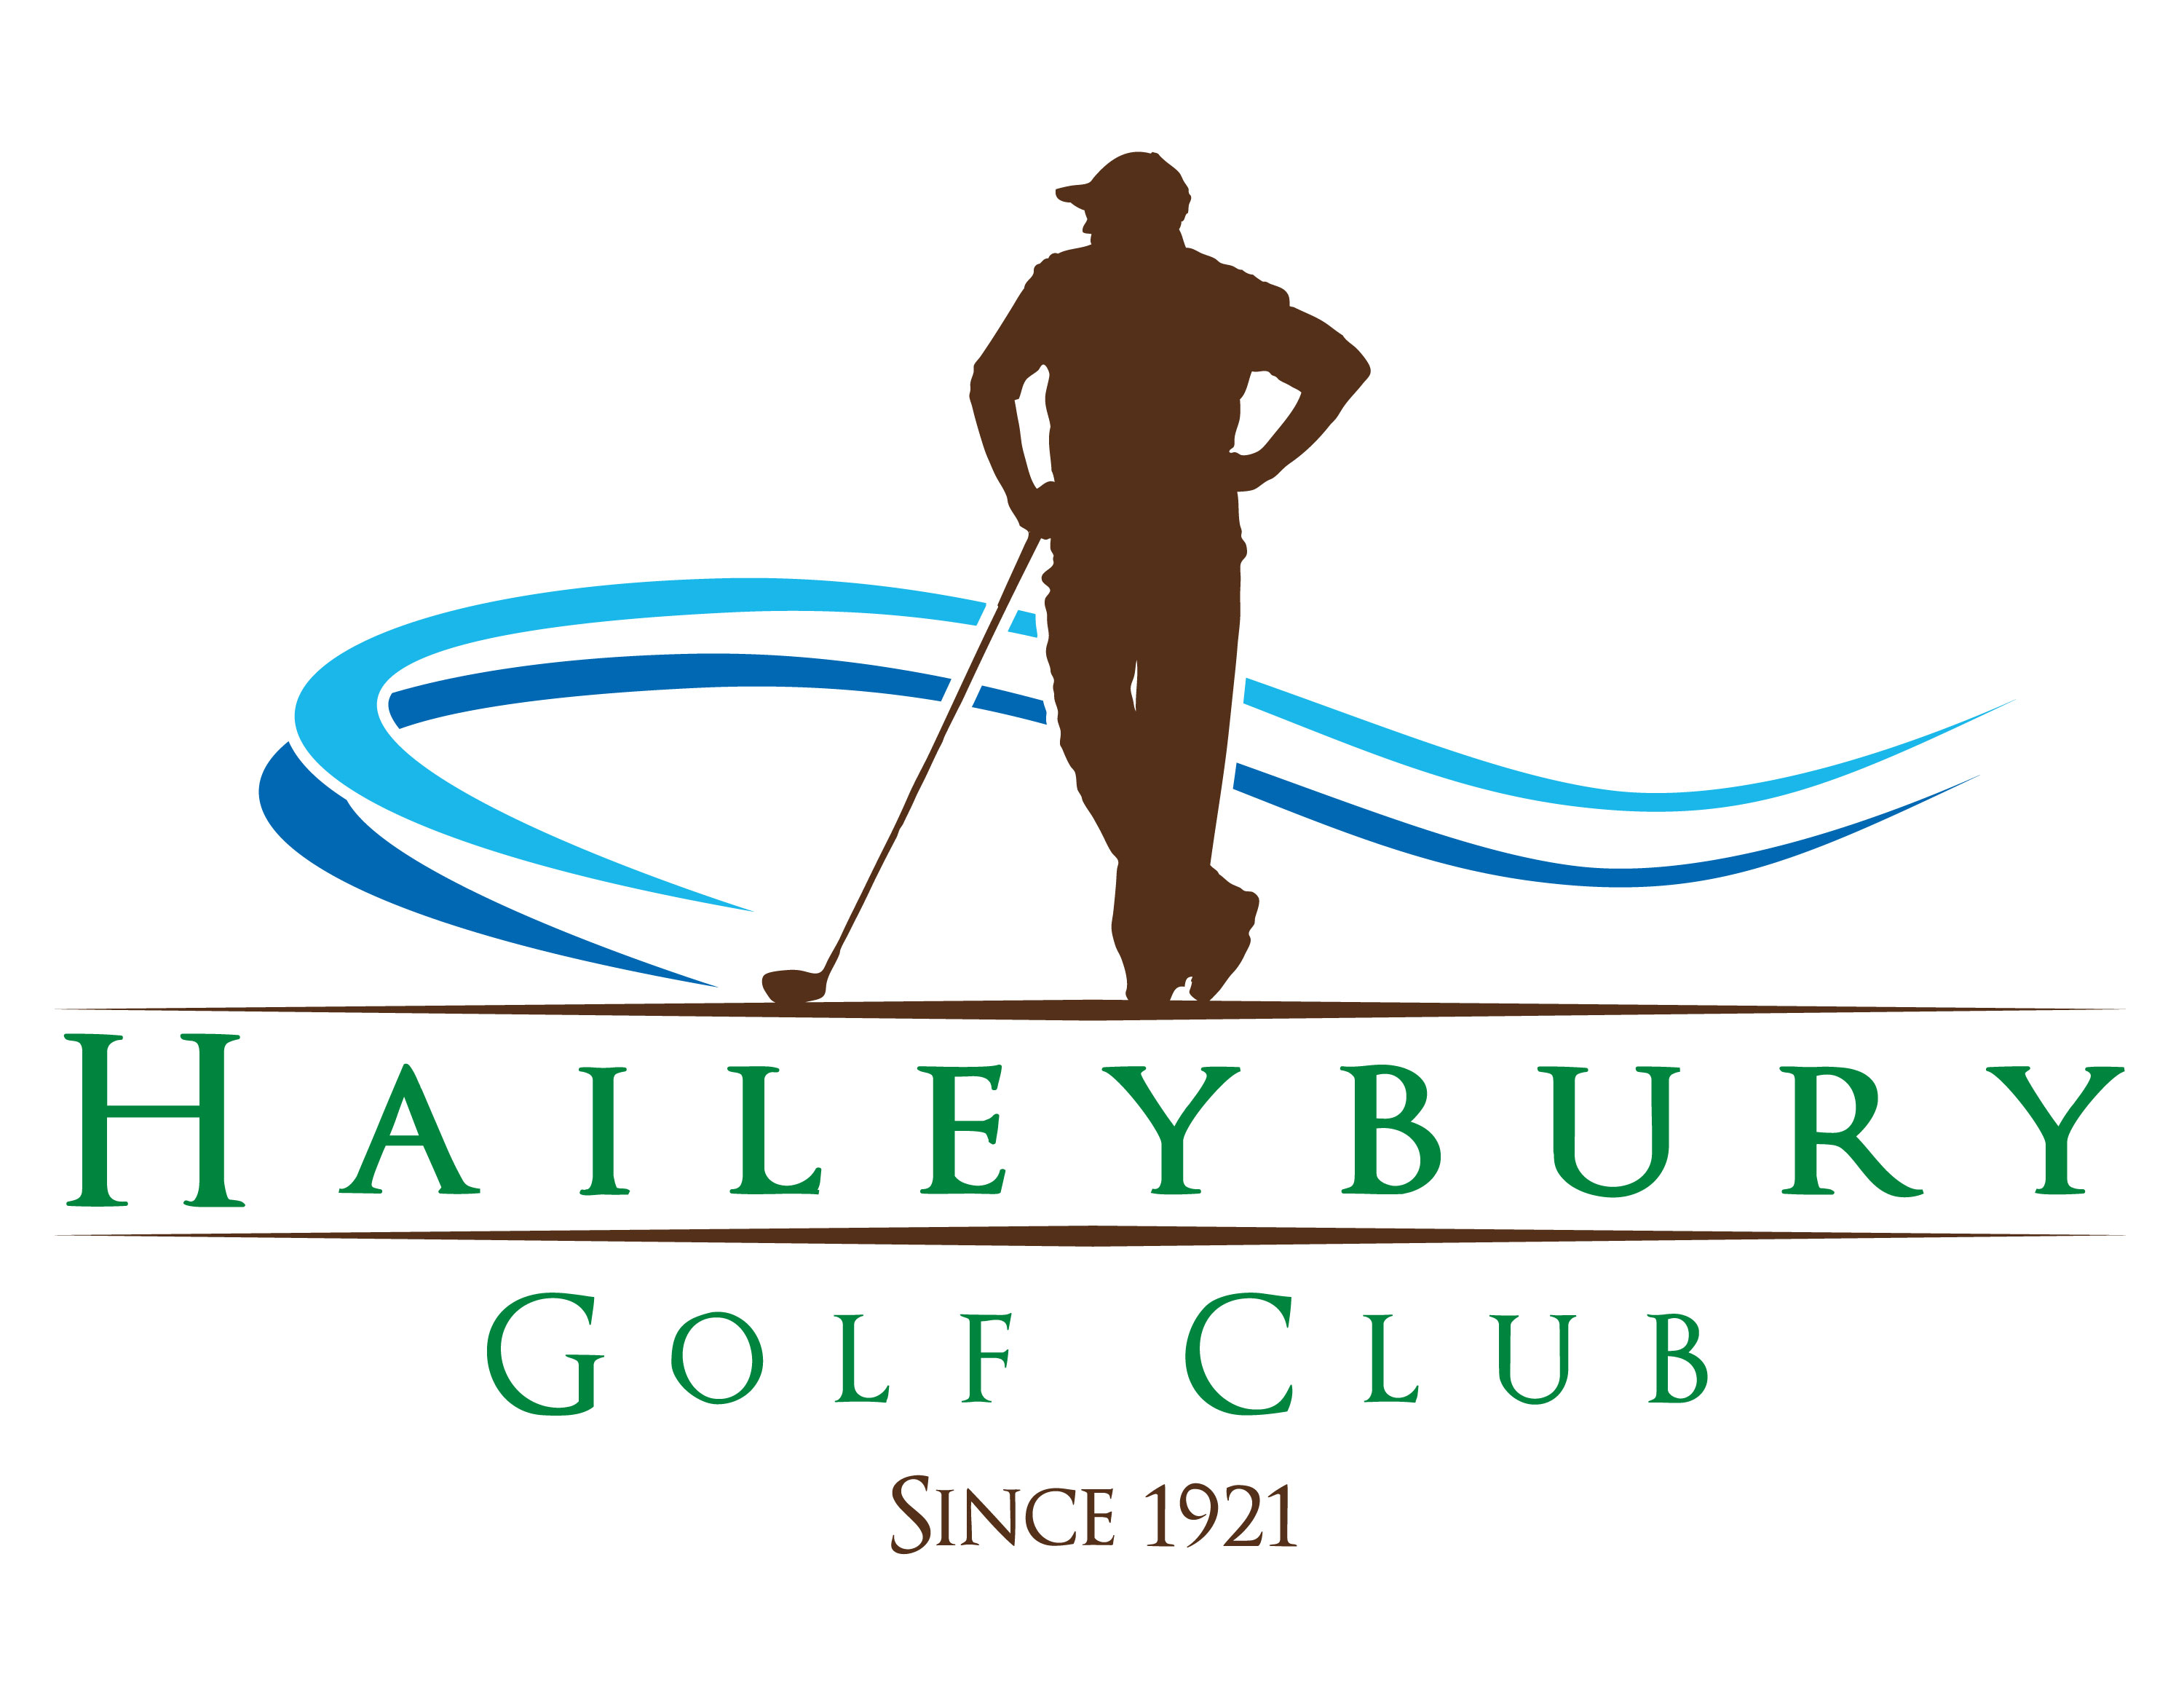 Haileybury Golf Club